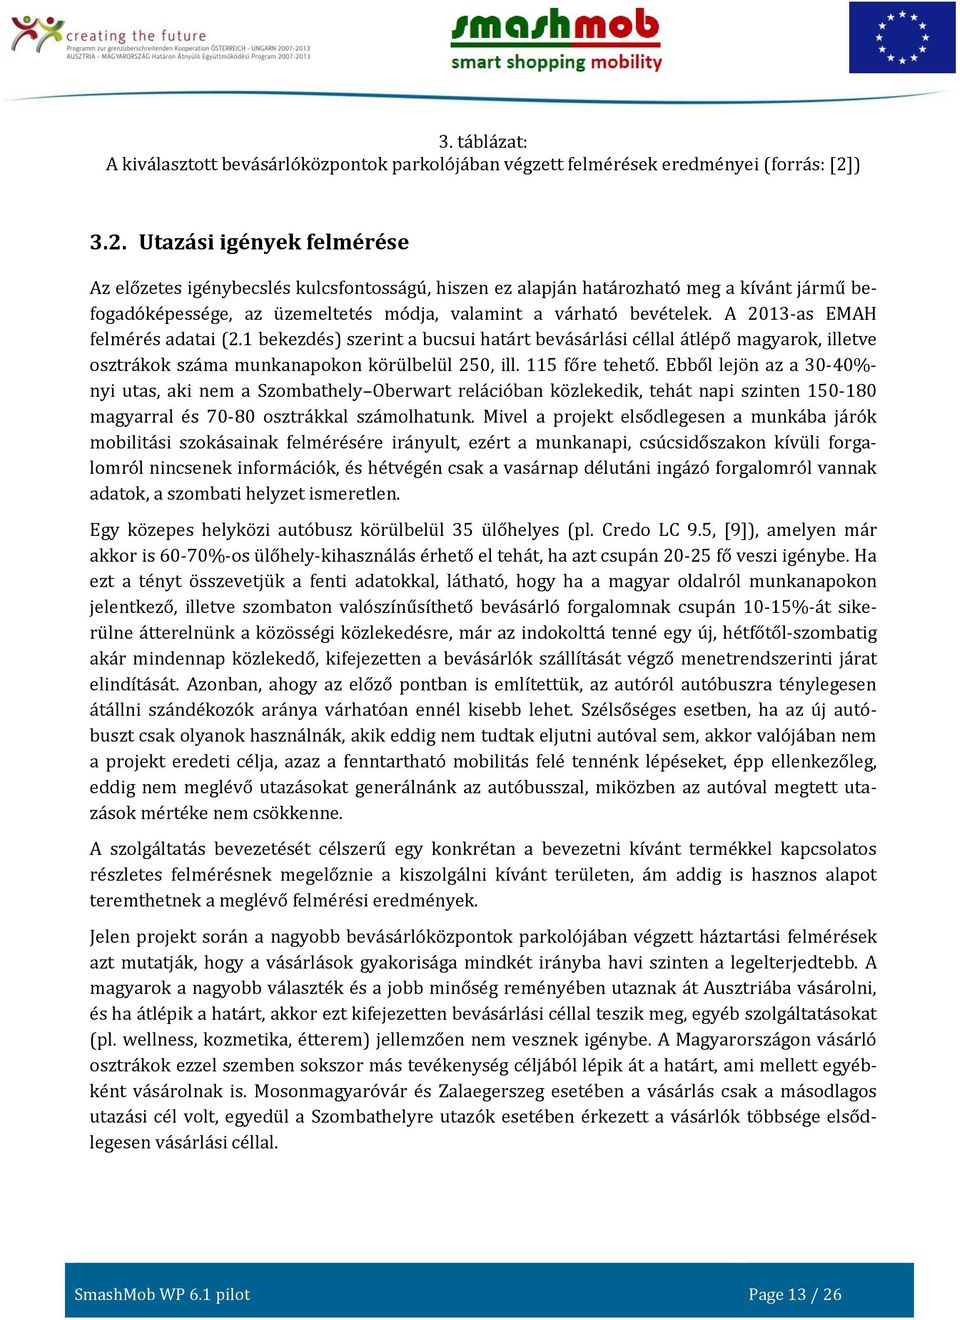 A 2013-as EMAH felmérés adatai (2.1 bekezdés) szerint a bucsui határt bevásárlási céllal átlépő magyarok, illetve osztrákok száma munkanapokon körülbelül 250, ill. 115 főre tehető.